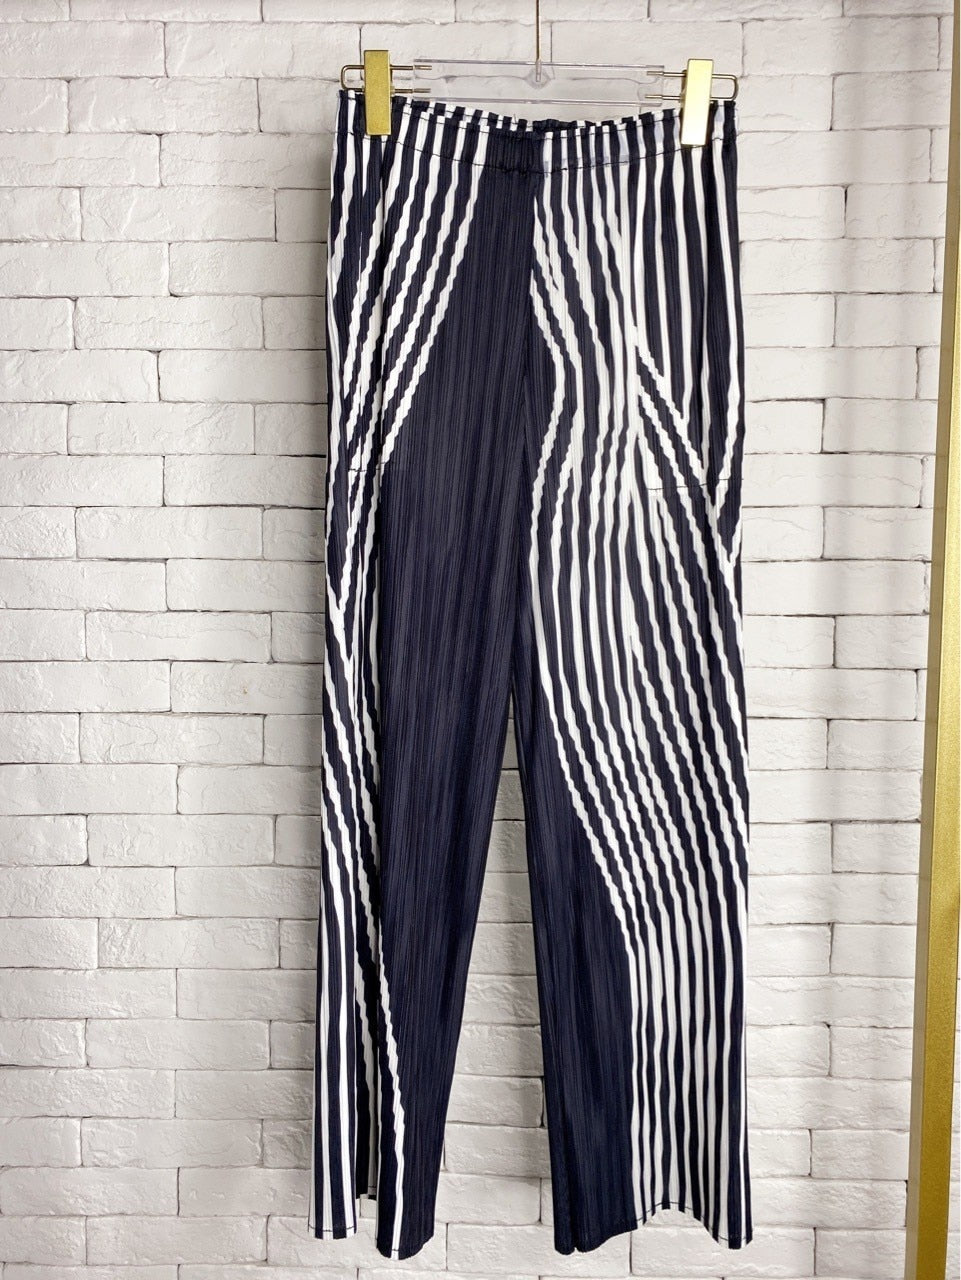 Turtleneck Striped Miyake Folds Large Size Slim Fit Vest + Straight Pants Two-piece Set